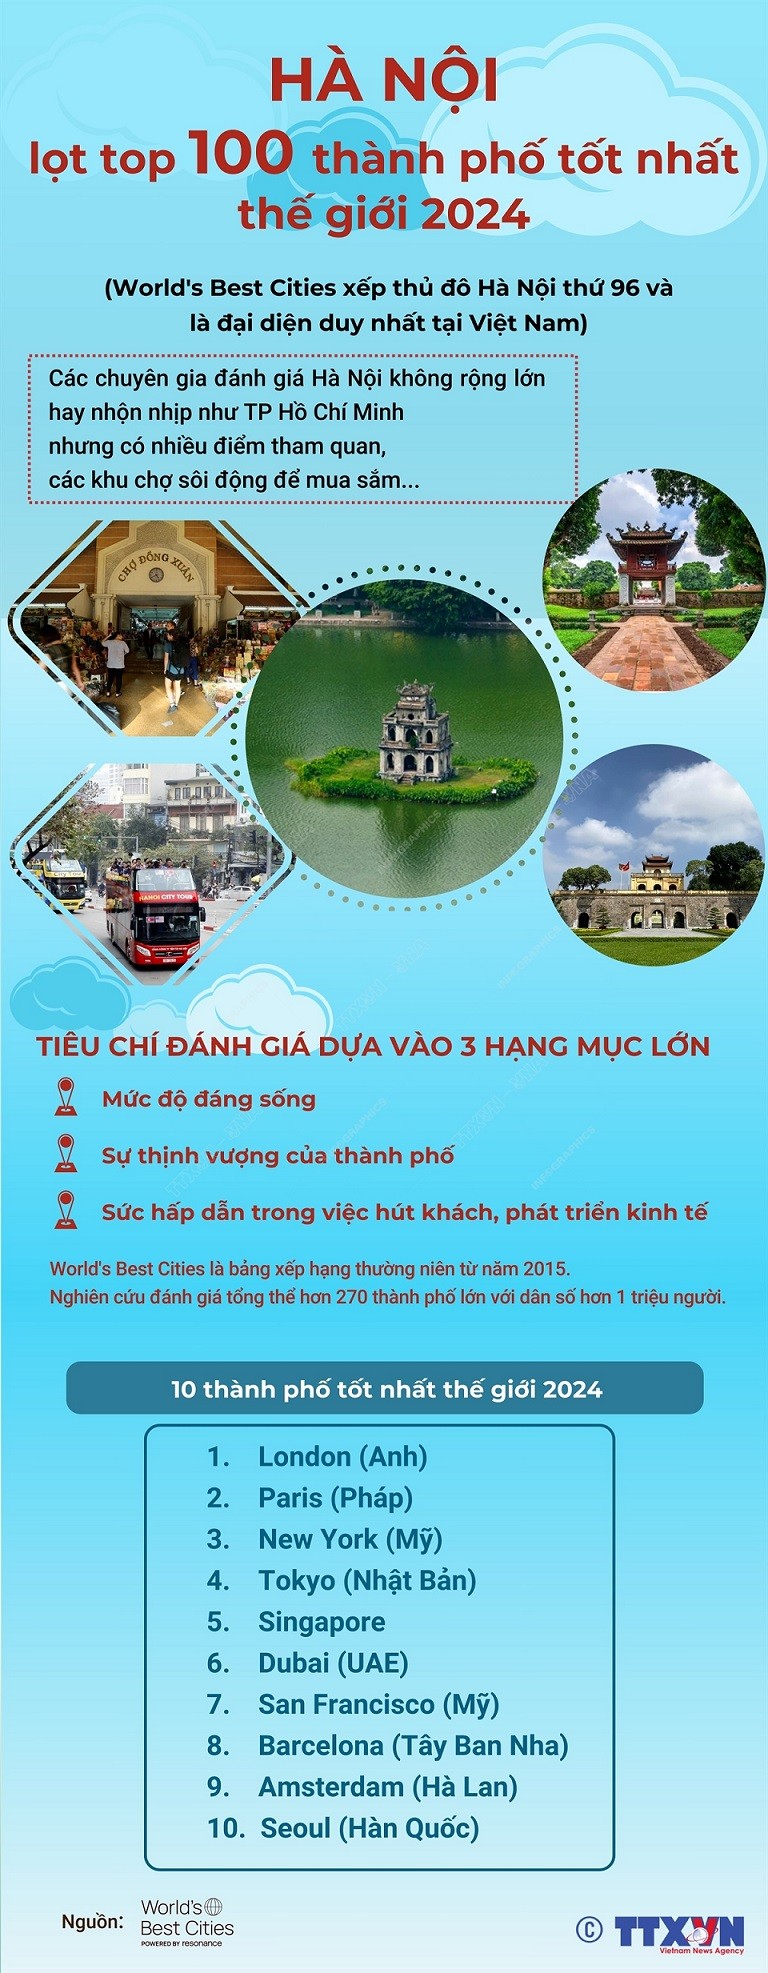 Thủ đô Hà Nội lọt top 100 thành phố tốt nhất thế giới năm 2024